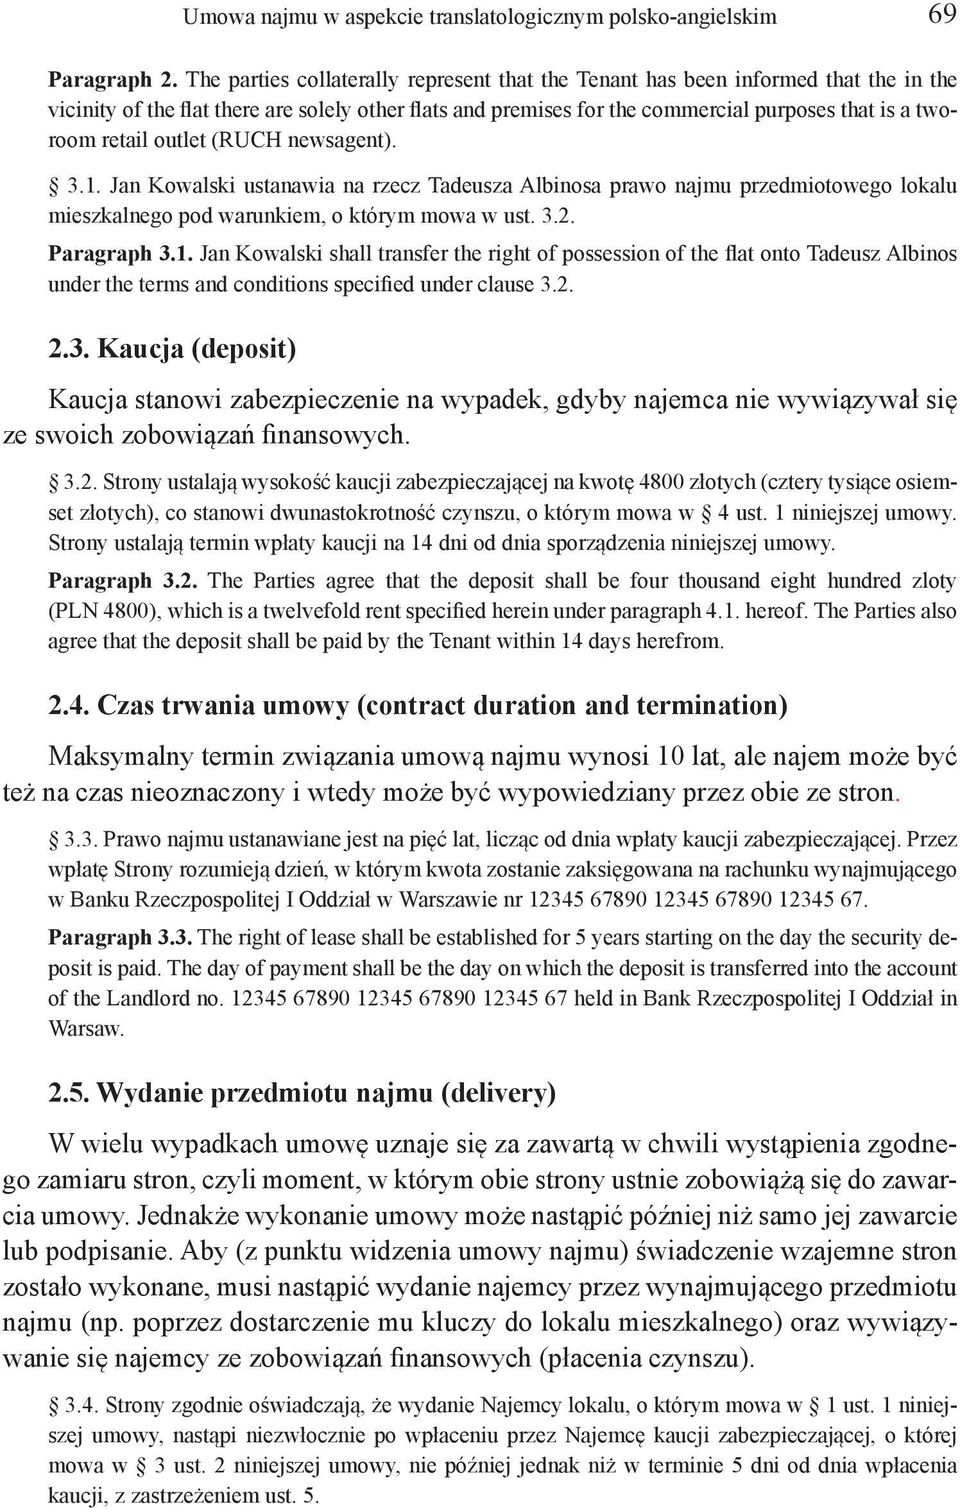 Umowa najmu w aspekcie translatologicznym polsko-angielskim - PDF Free  Download